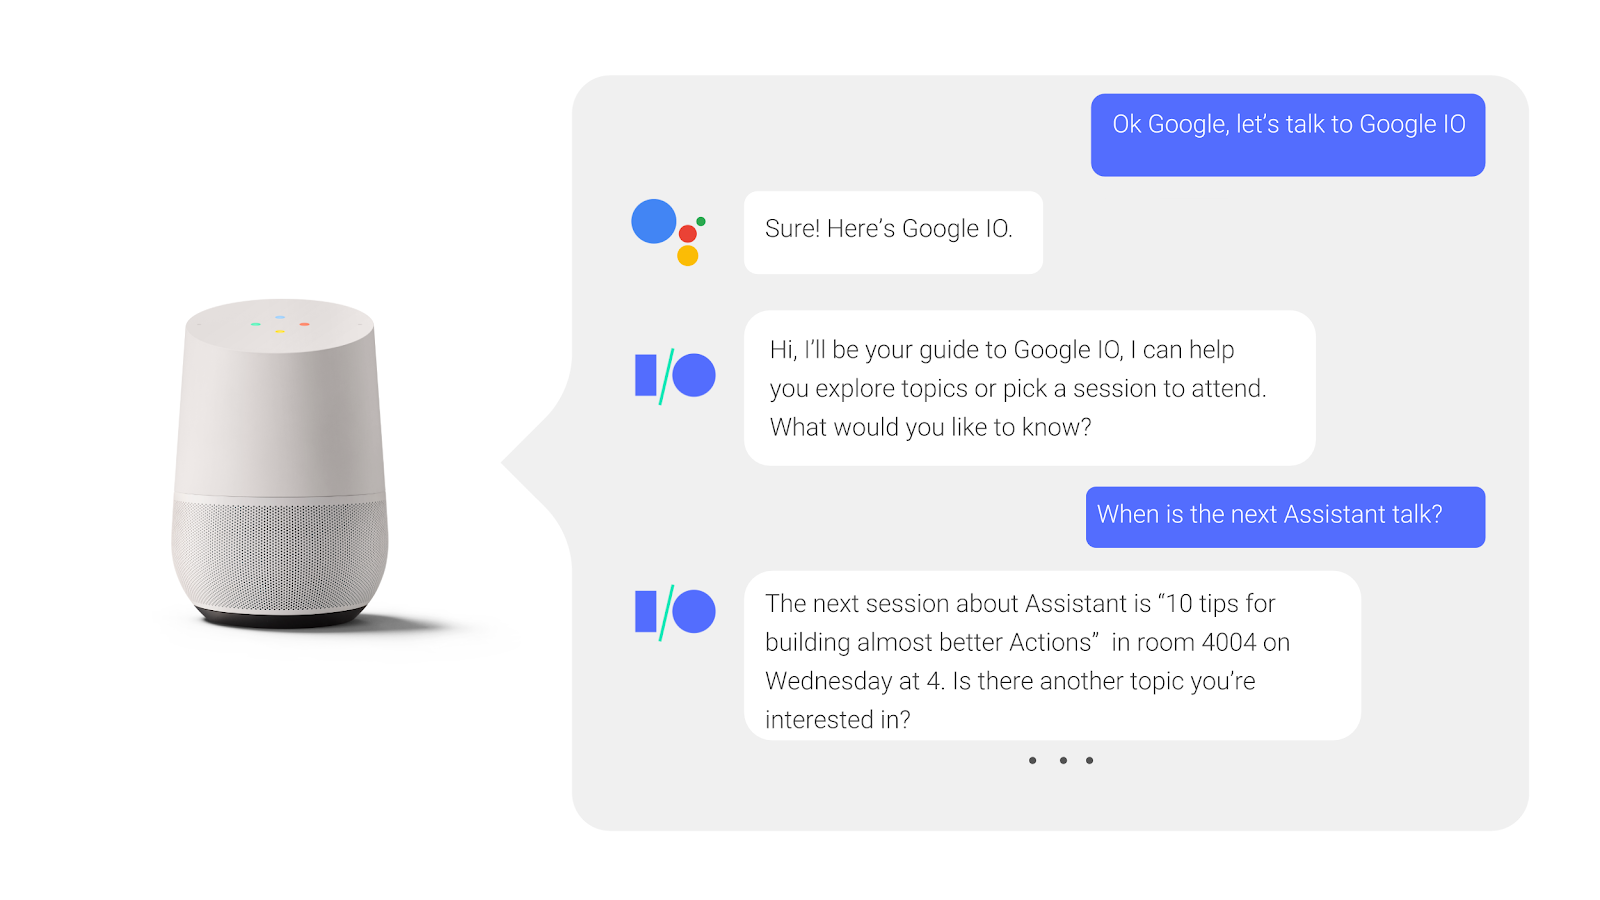 در یک مکالمه پشت سر هم با دستیار Google، یک کاربر در مورد زمان برگزاری جلسه کنفرانس سؤال می کند و پاسخی را دریافت می کند.